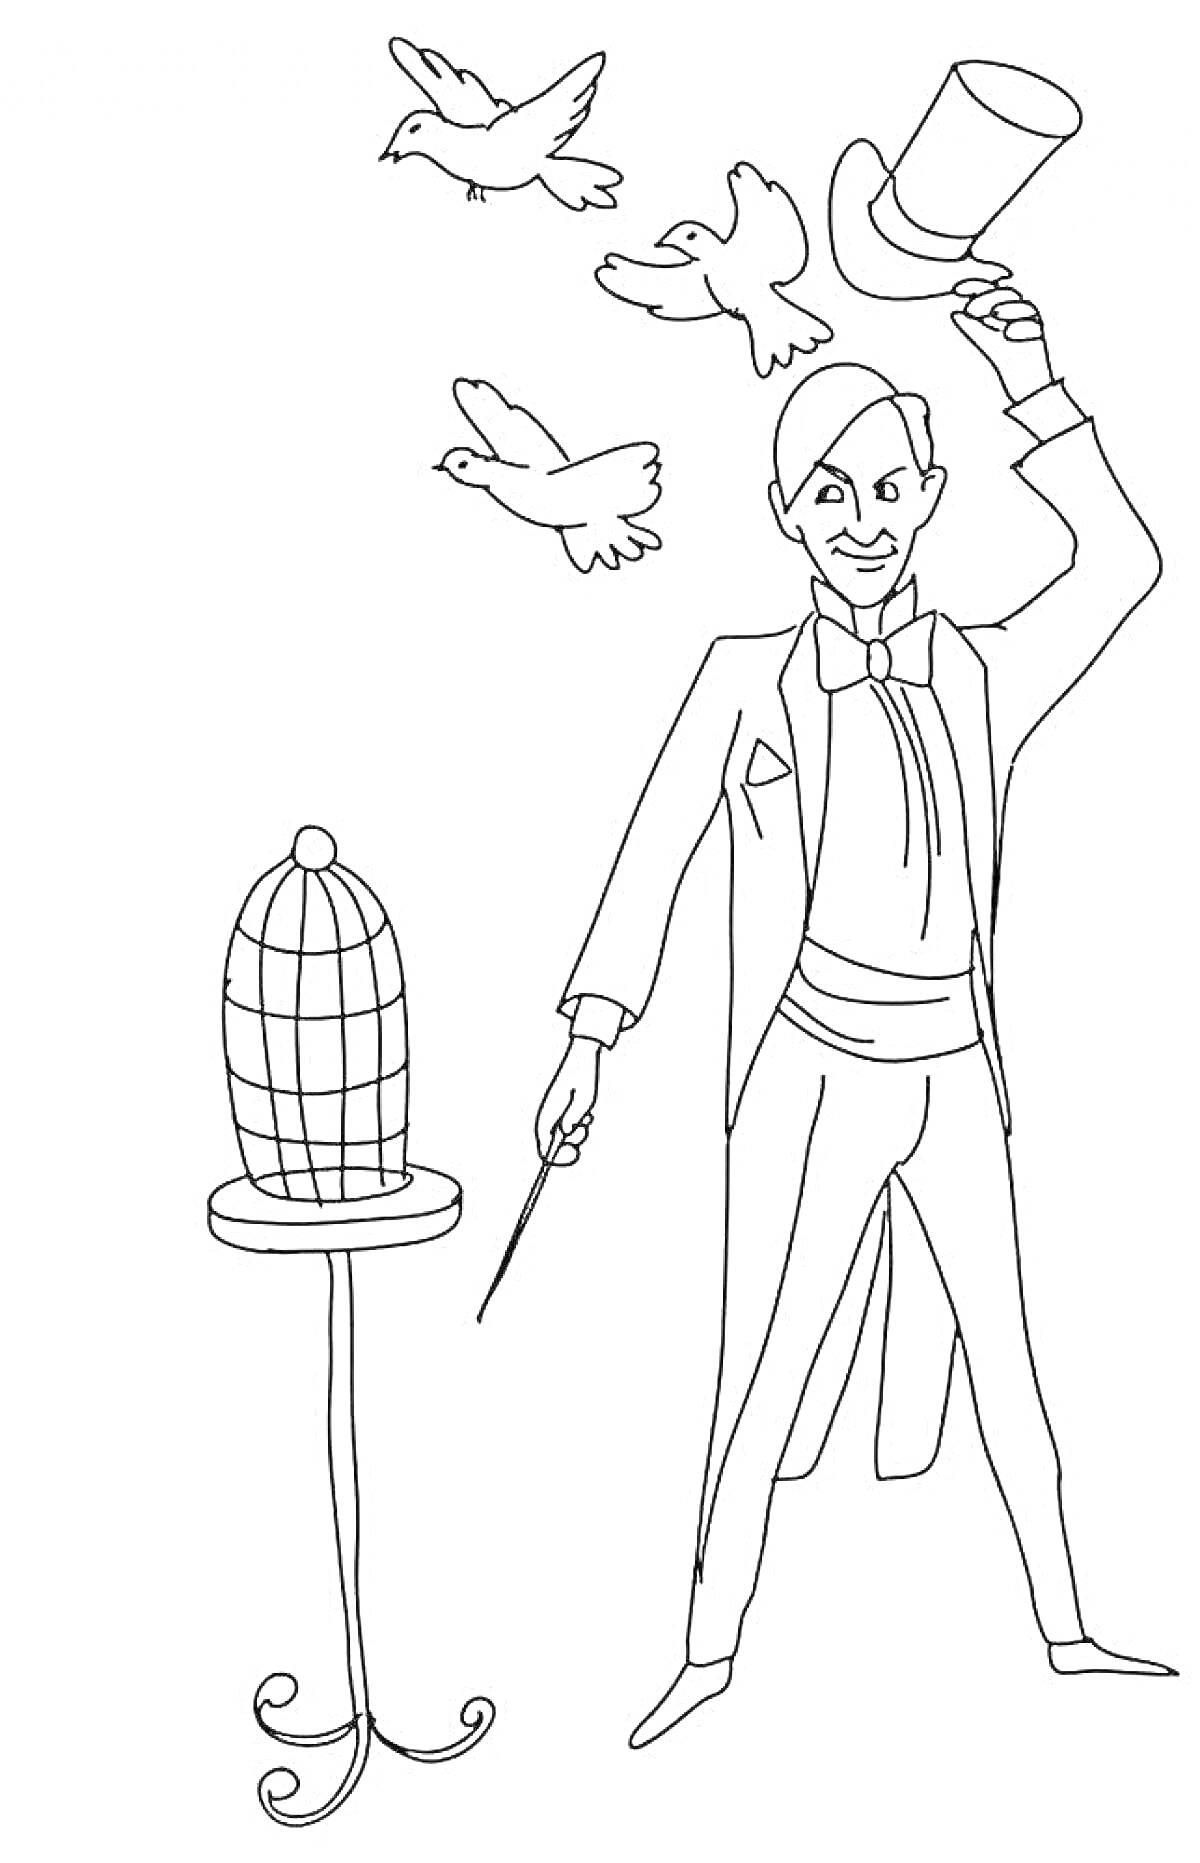 Волшебник, выпускающий голубей из шляпы с волшебной палочкой рядом с клеткой